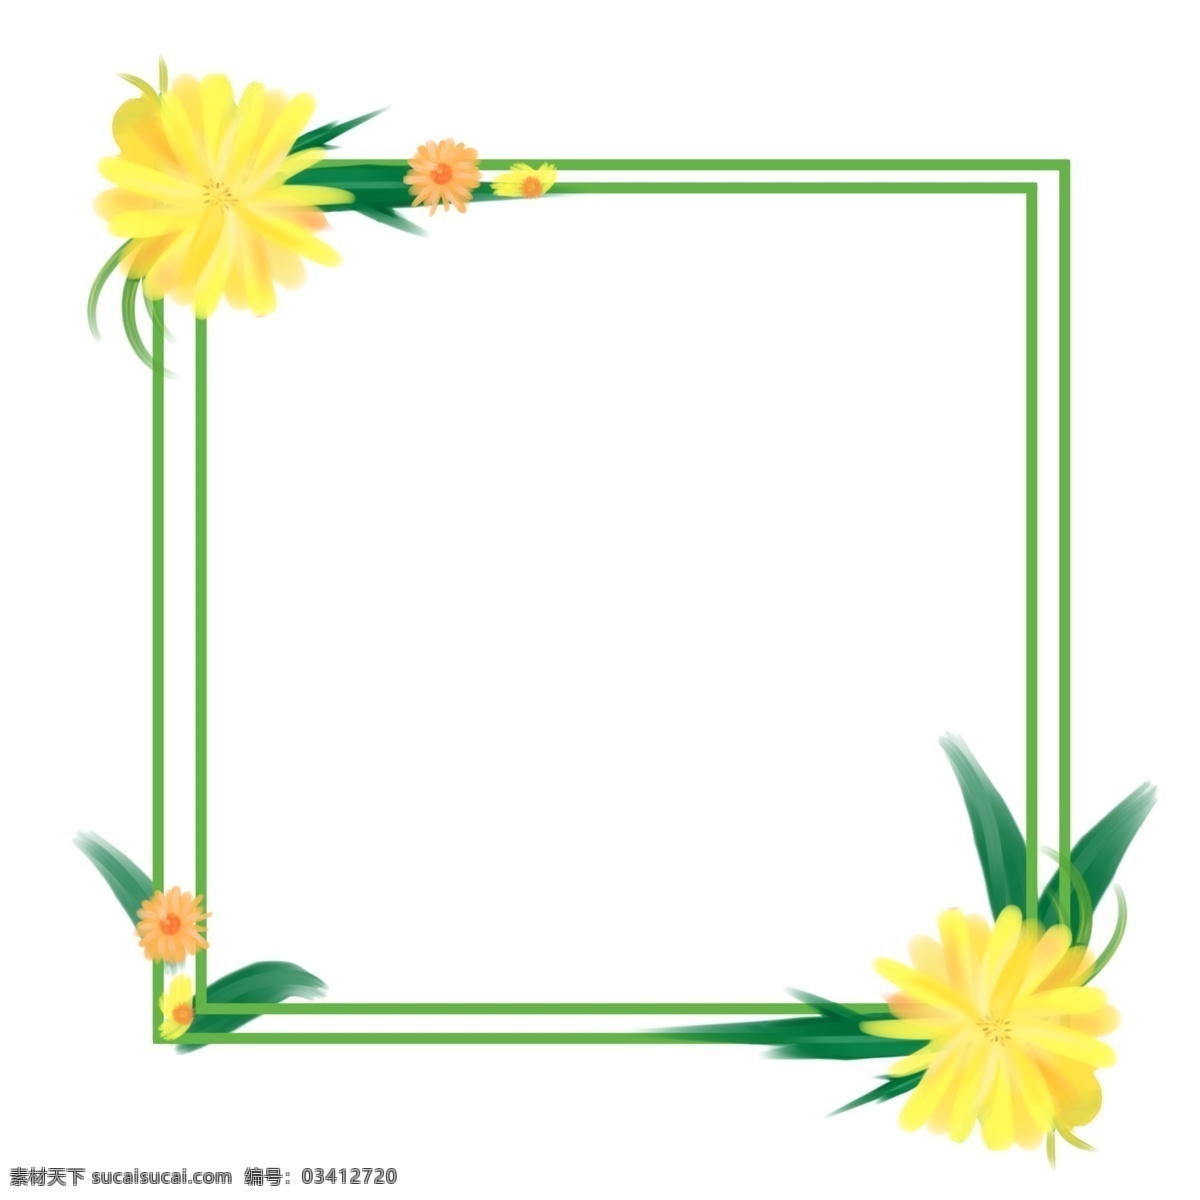 漂亮 黄色 花朵 边框 花朵边框 花环花朵边框 黄色花朵边框 黄色花儿边框 边框插图